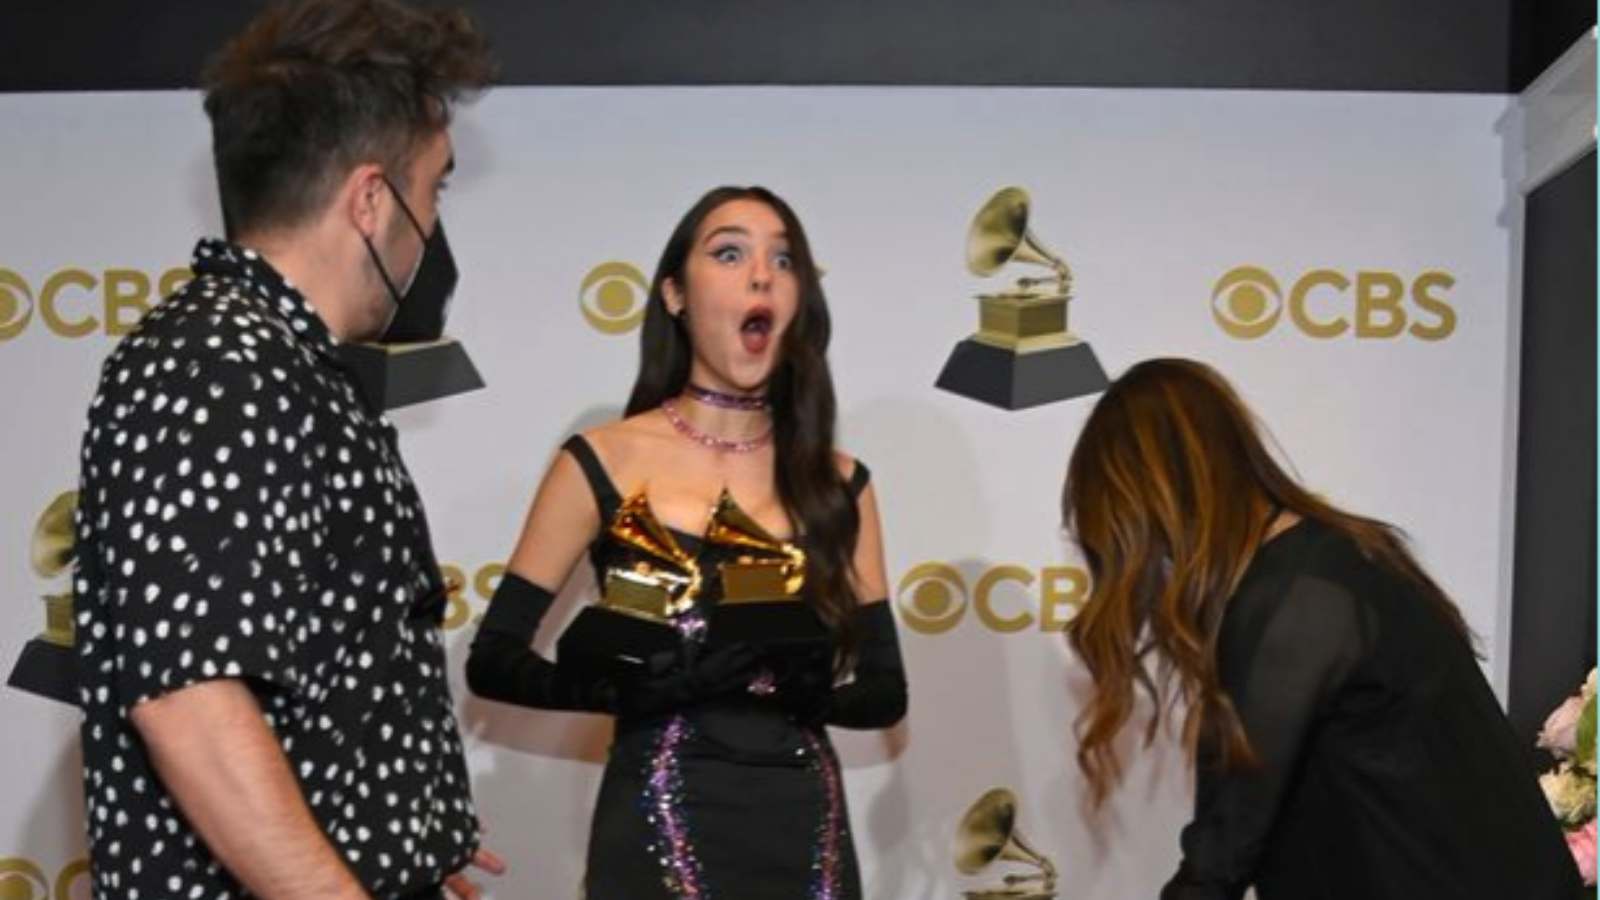 Rodrigo as she dropped her award